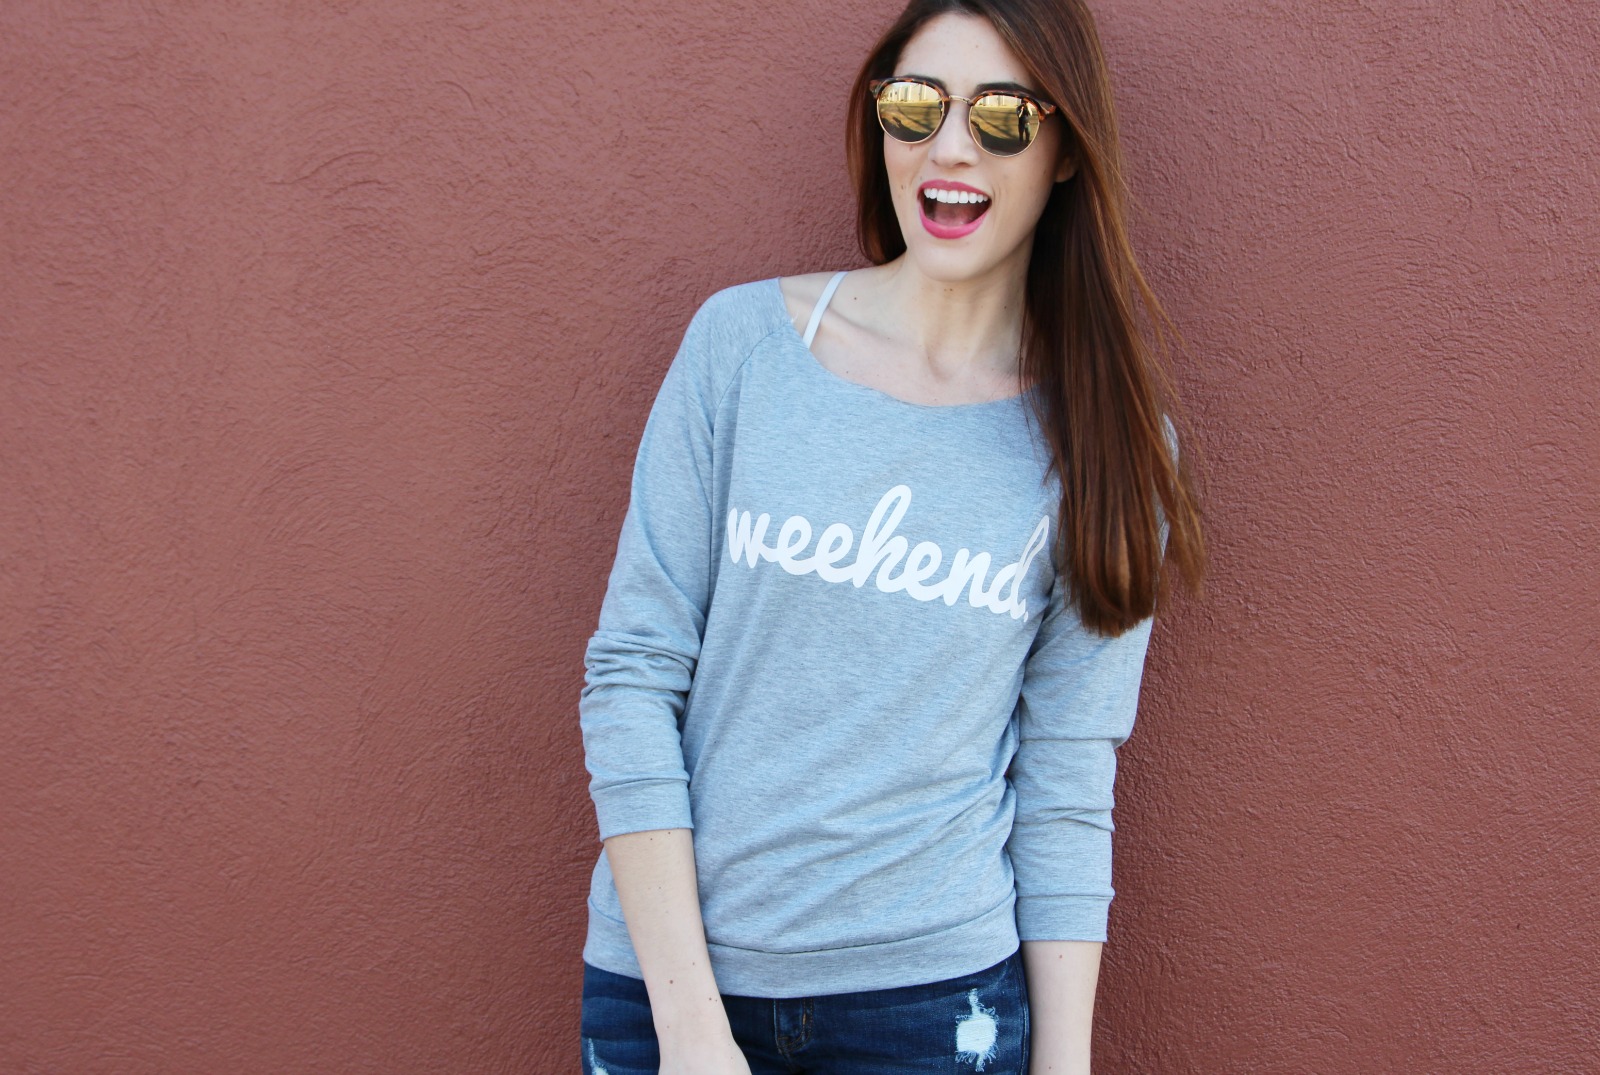 Weekend Sweatshirt - casual outfit